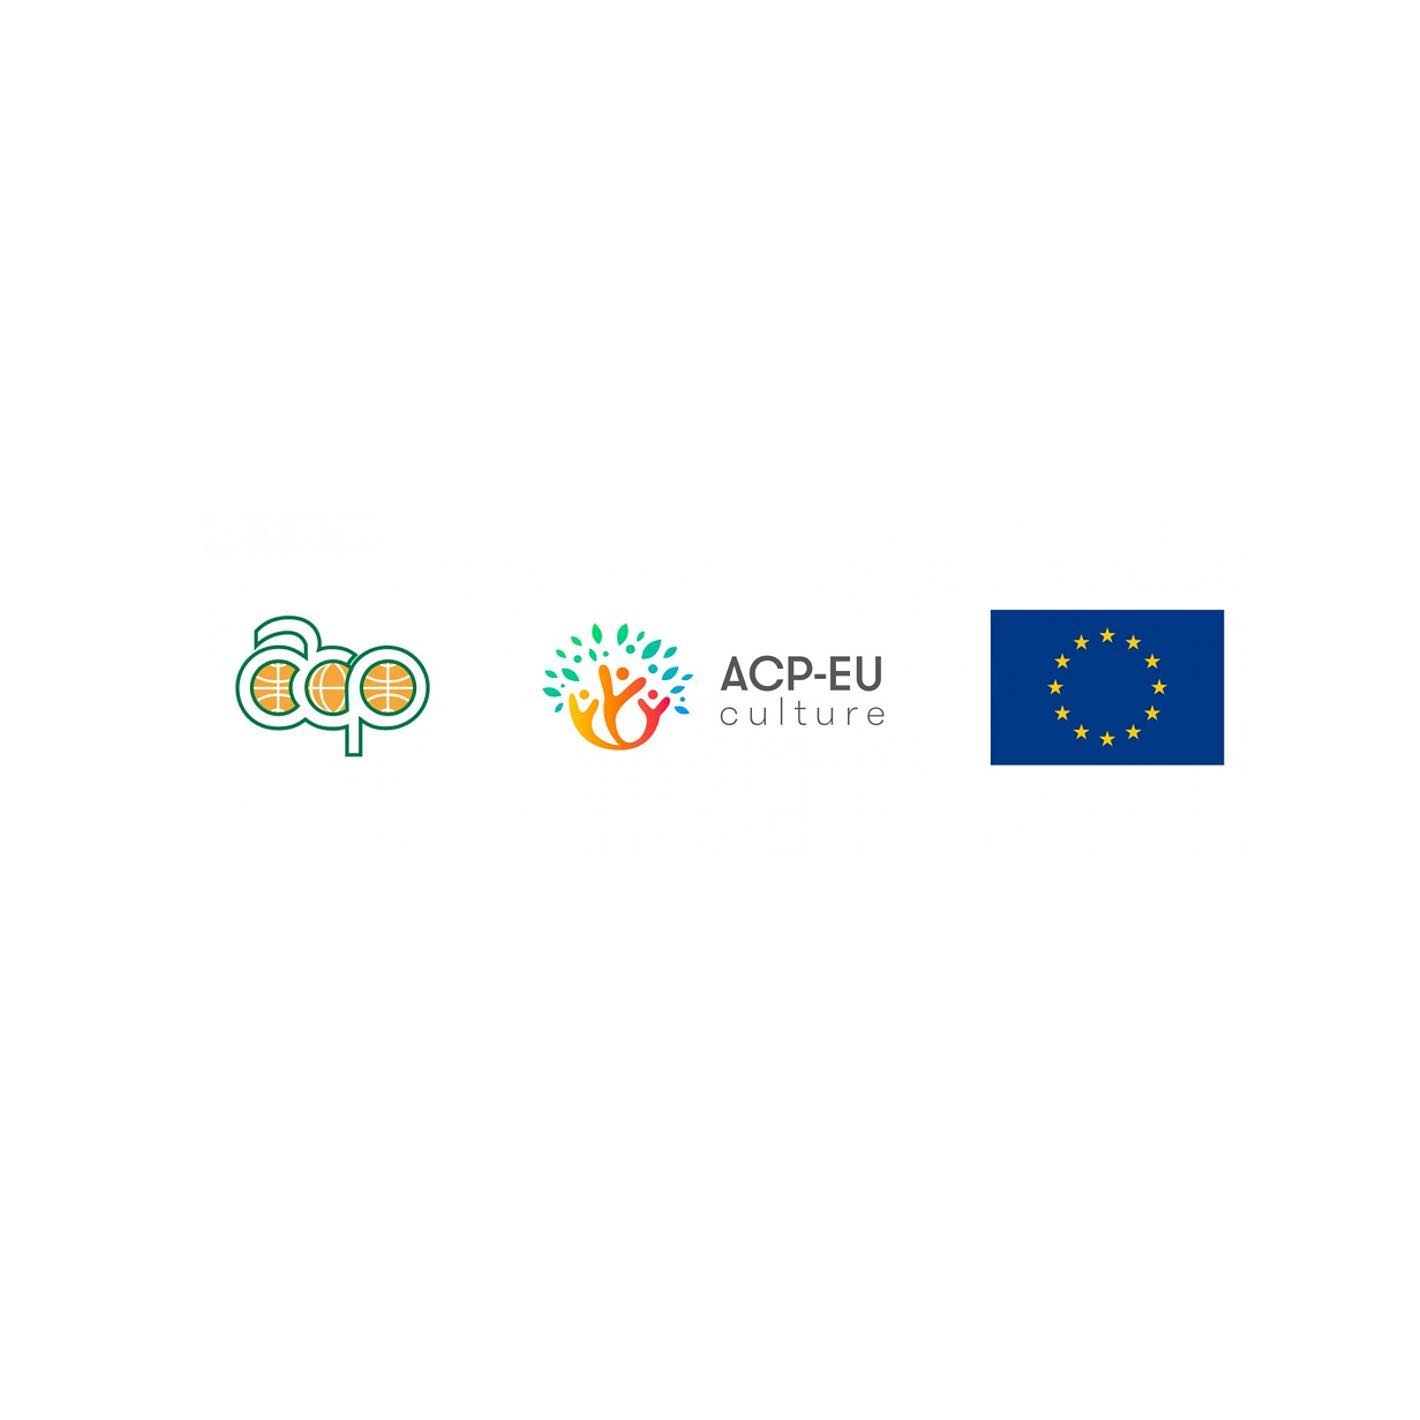 CfP APC EU Culture Programme 15 Jan